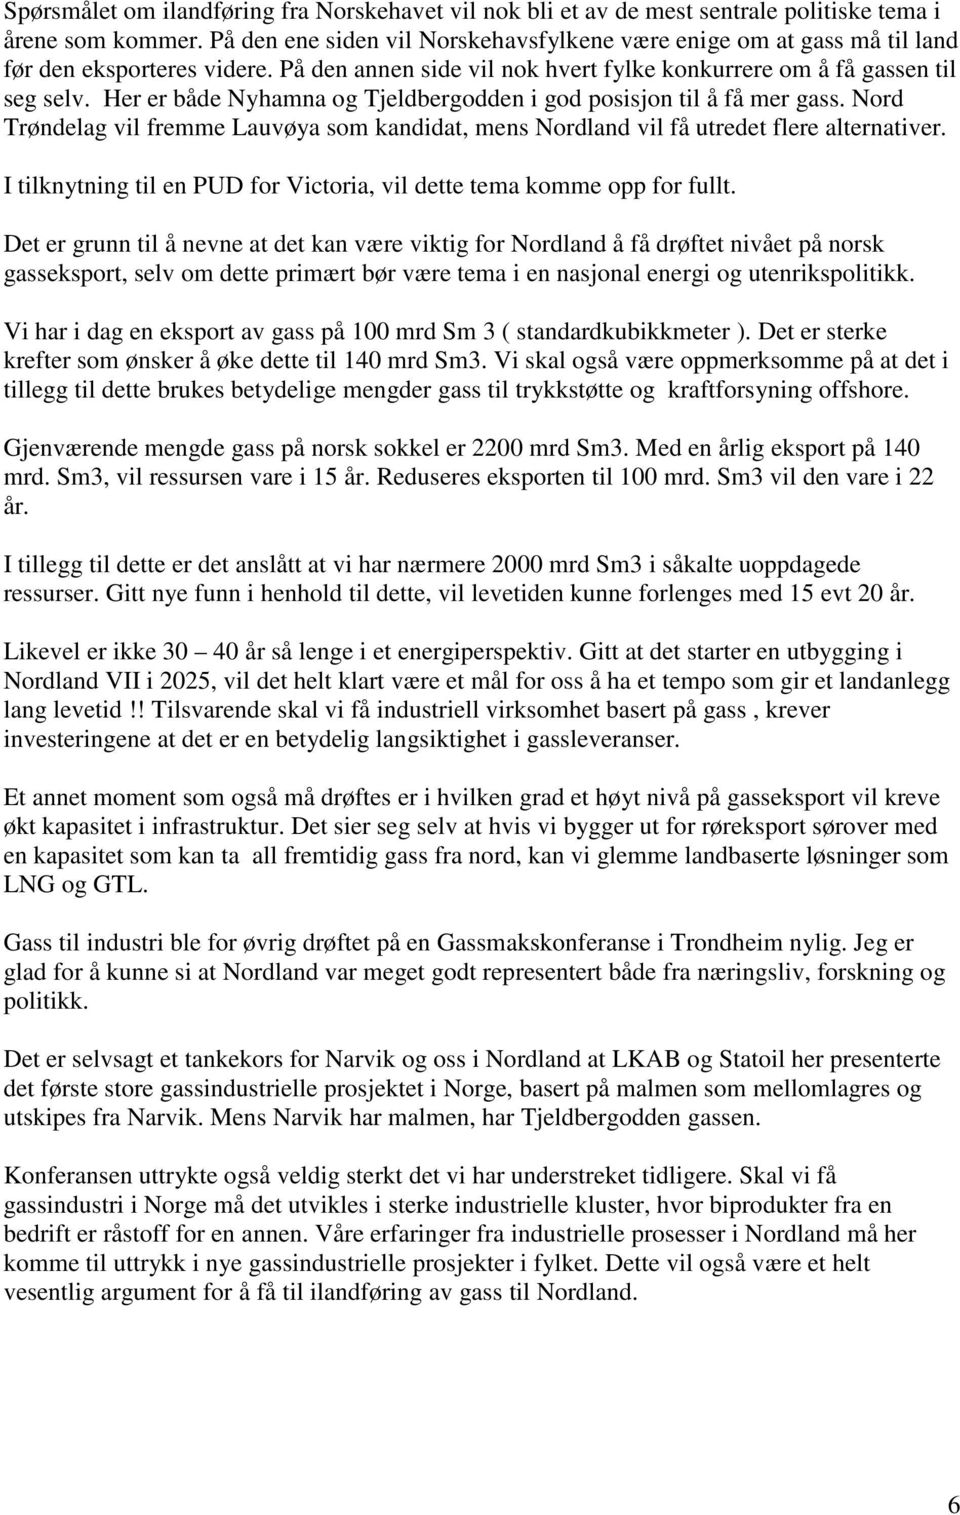 Her er både Nyhamna og Tjeldbergodden i god posisjon til å få mer gass. Nord Trøndelag vil fremme Lauvøya som kandidat, mens Nordland vil få utredet flere alternativer.